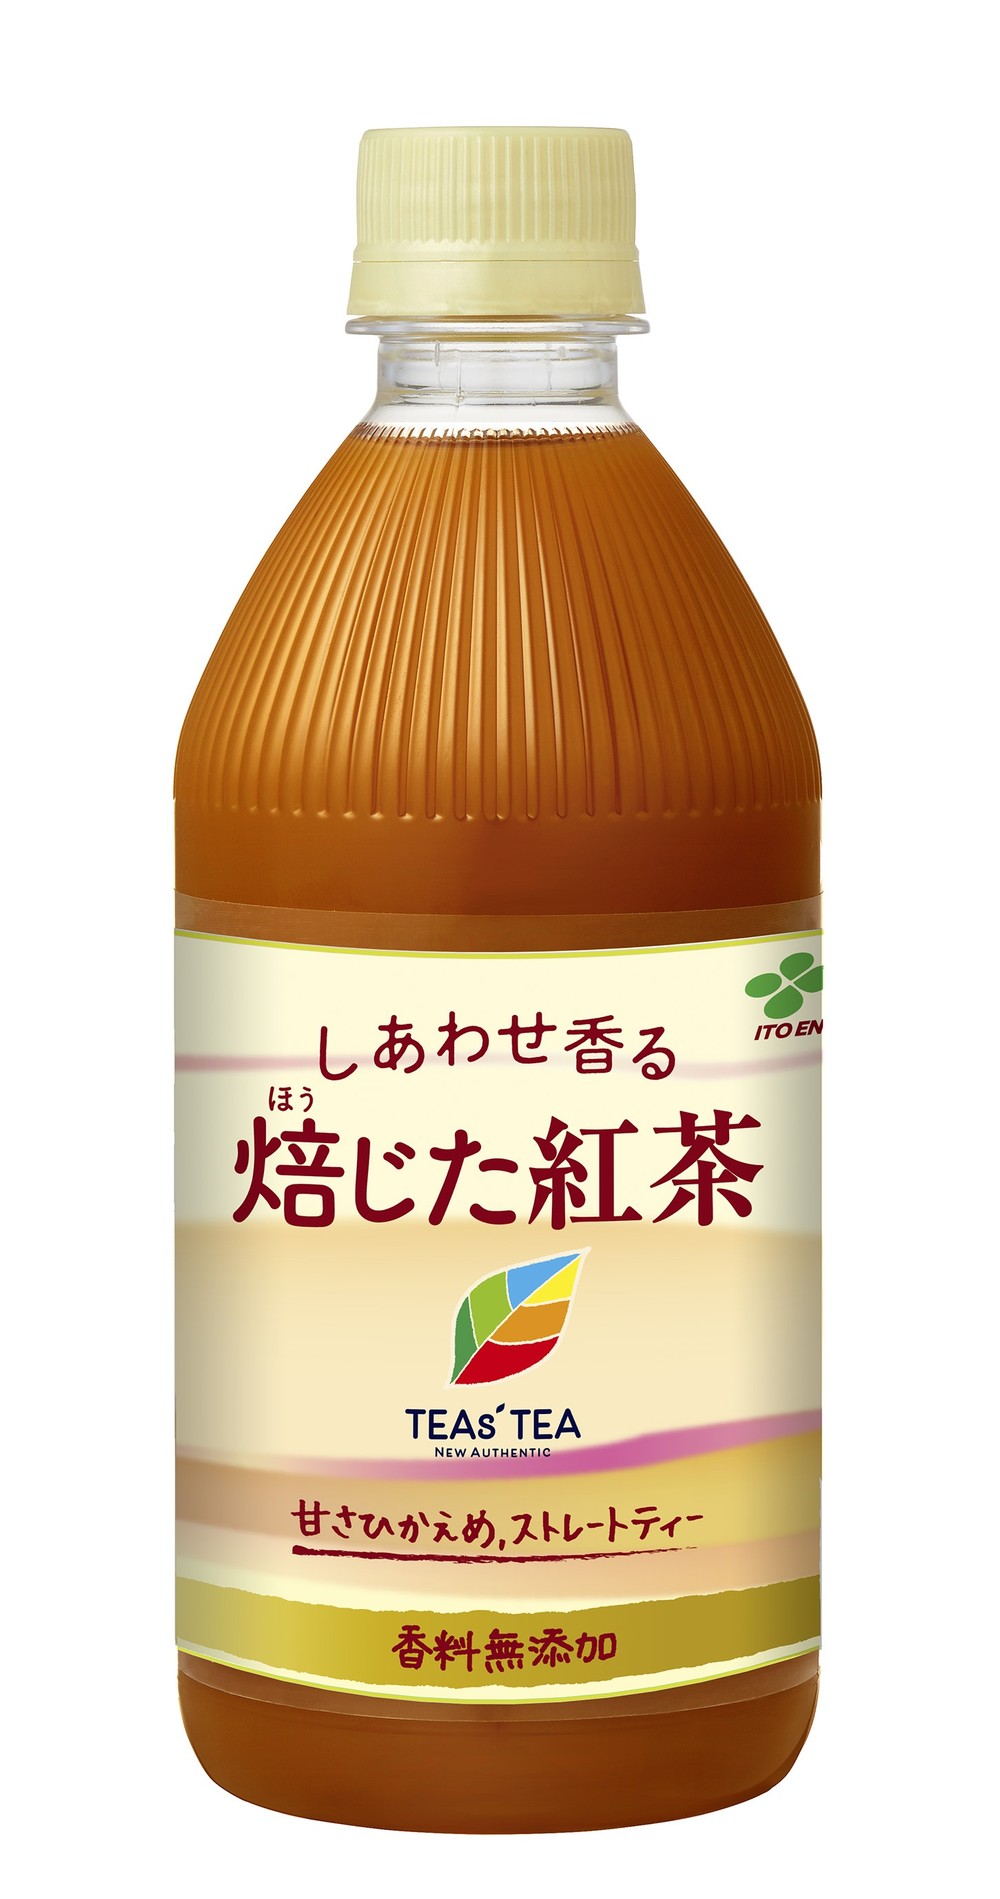 甘さ控えめで濃厚な香り 「しあわせ香る 焙じた紅茶」: J-CAST トレンド